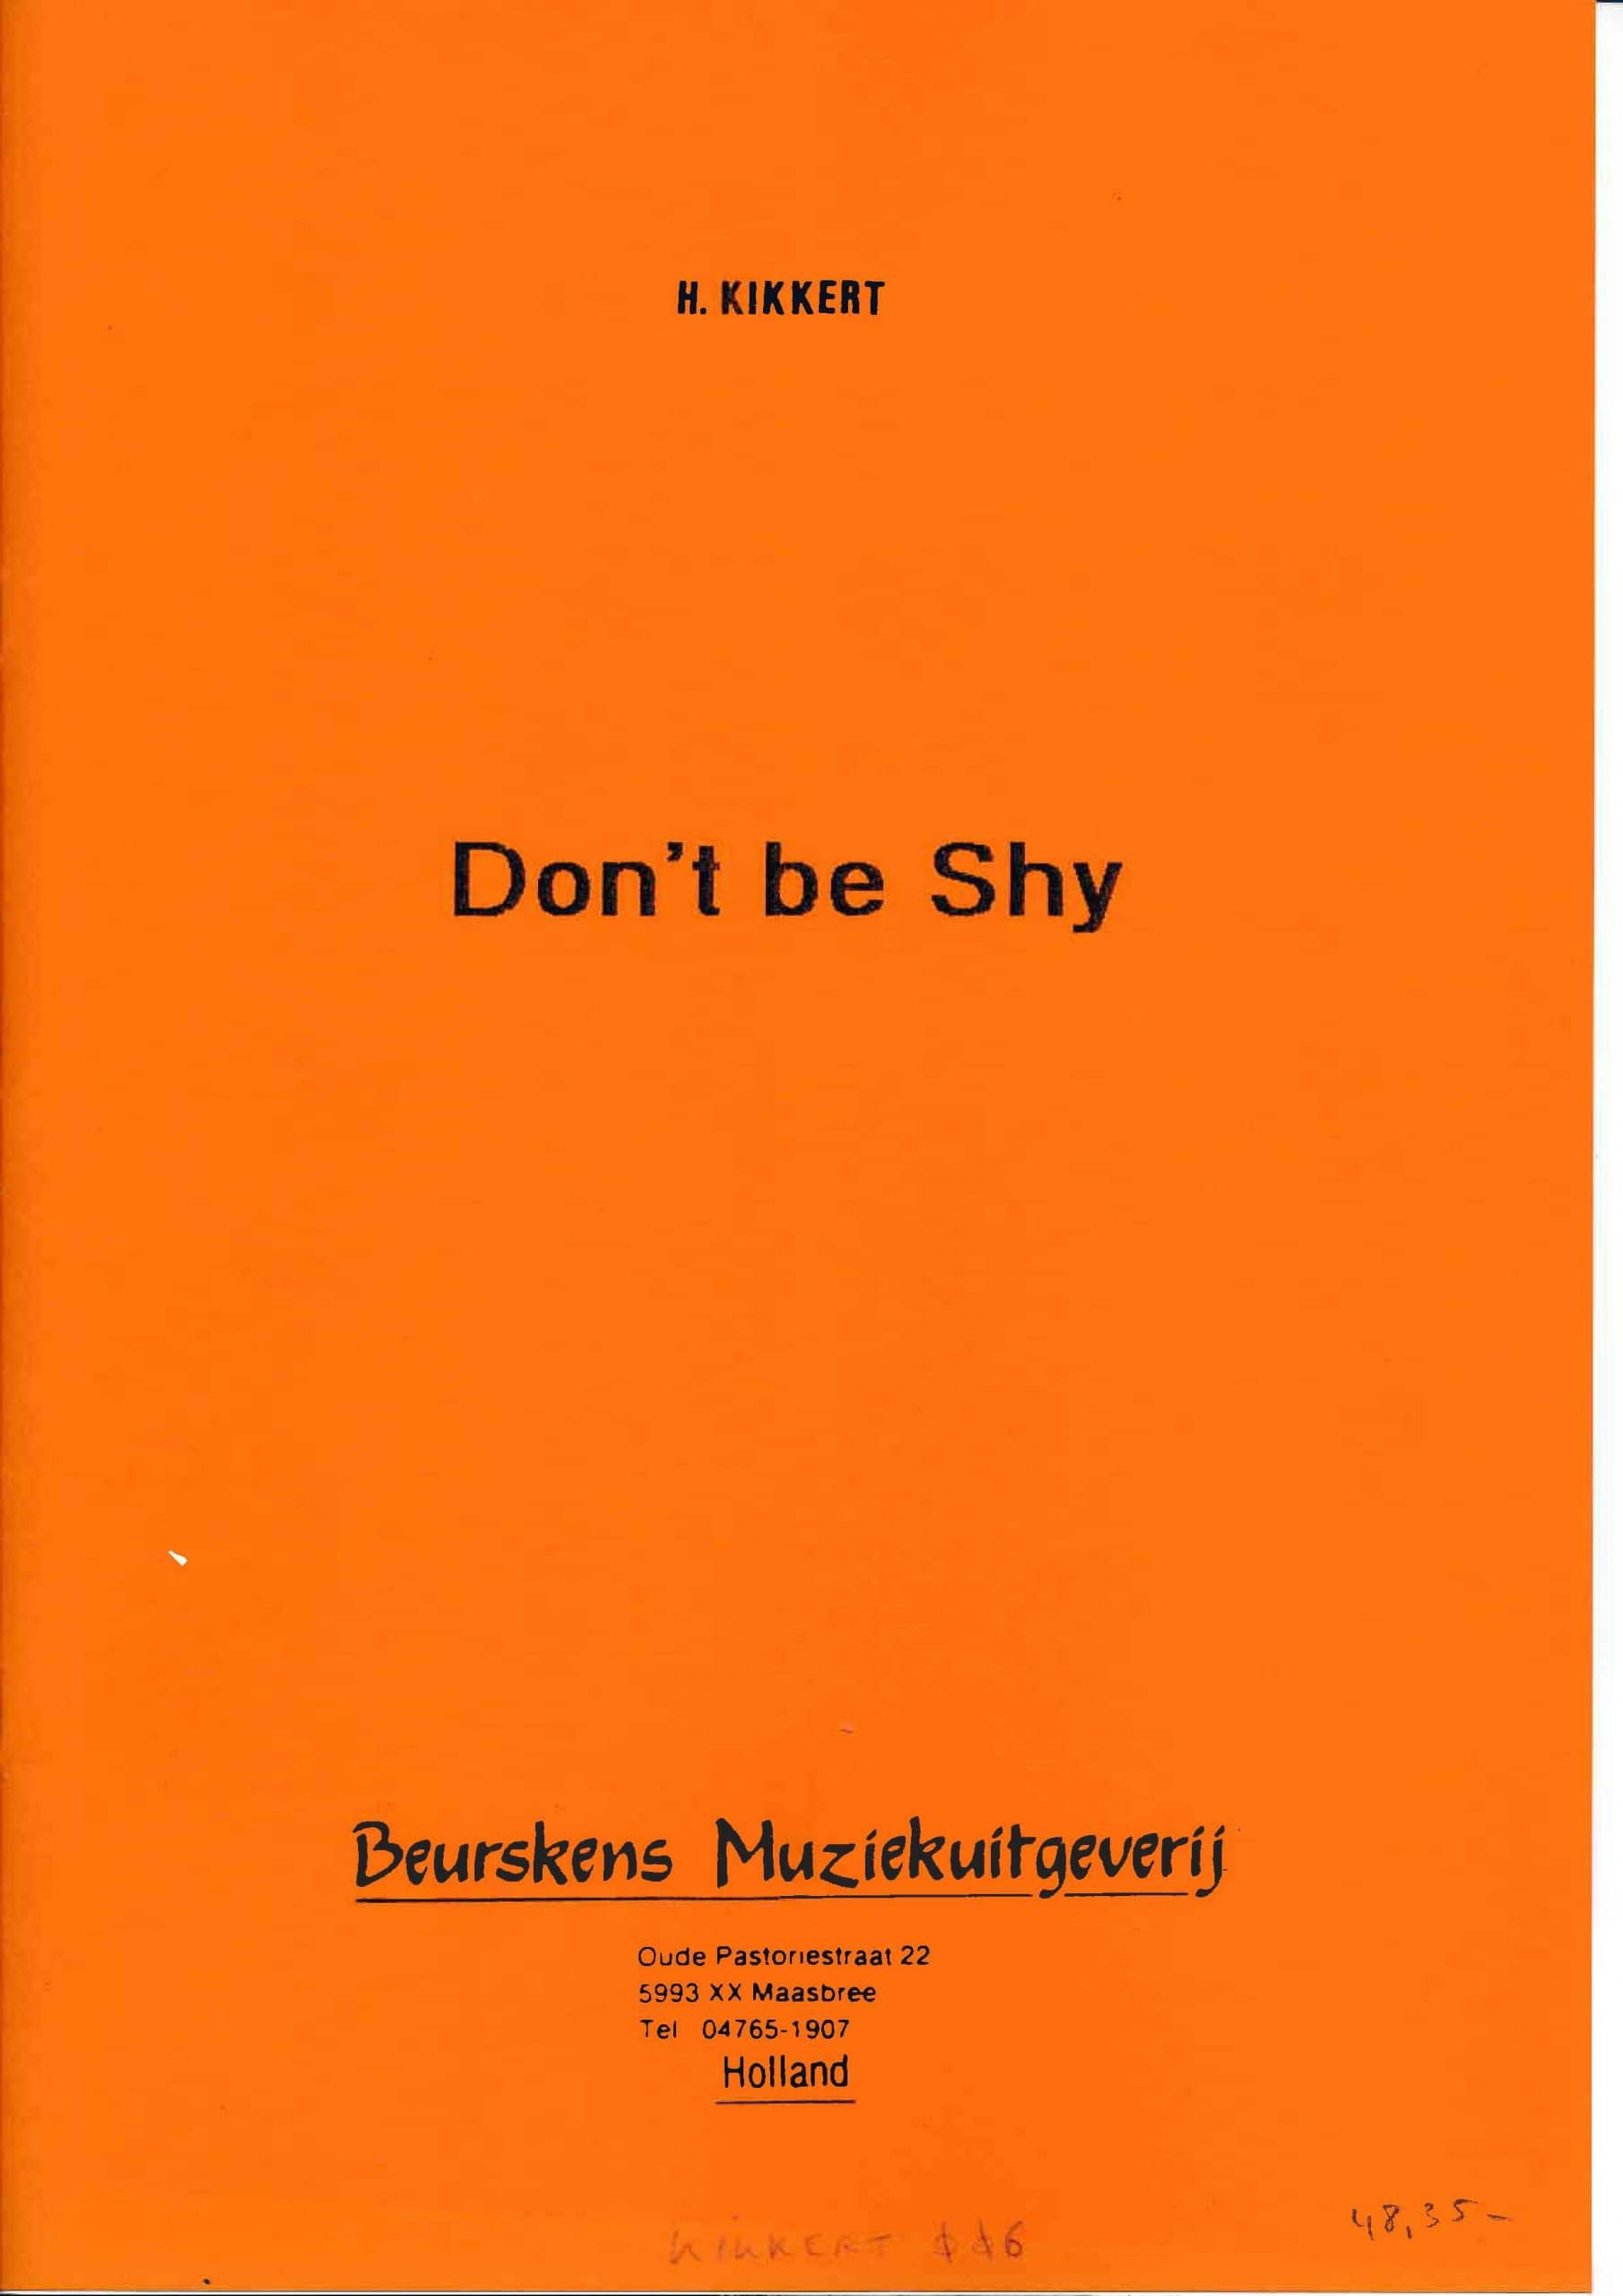 Don't be Shy by H. Kikkert